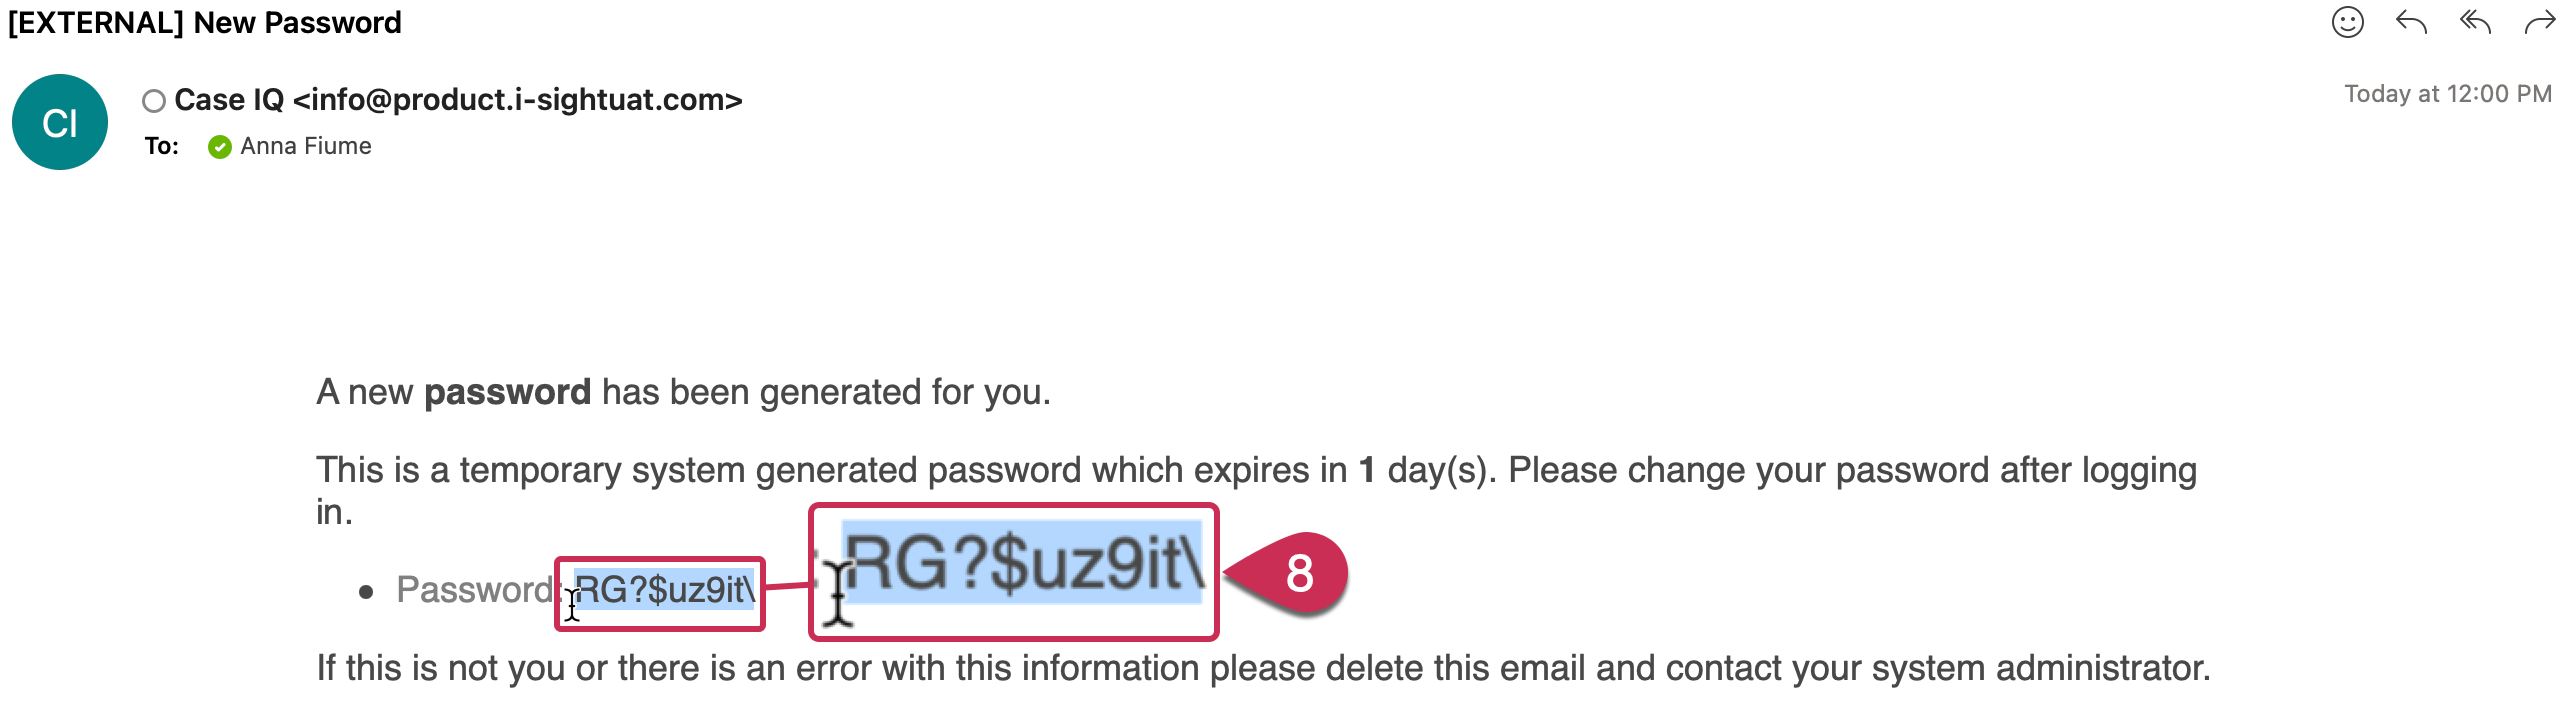 Copie du mot de passe temporaire dans l'e-mail du nouveau mot de passe.